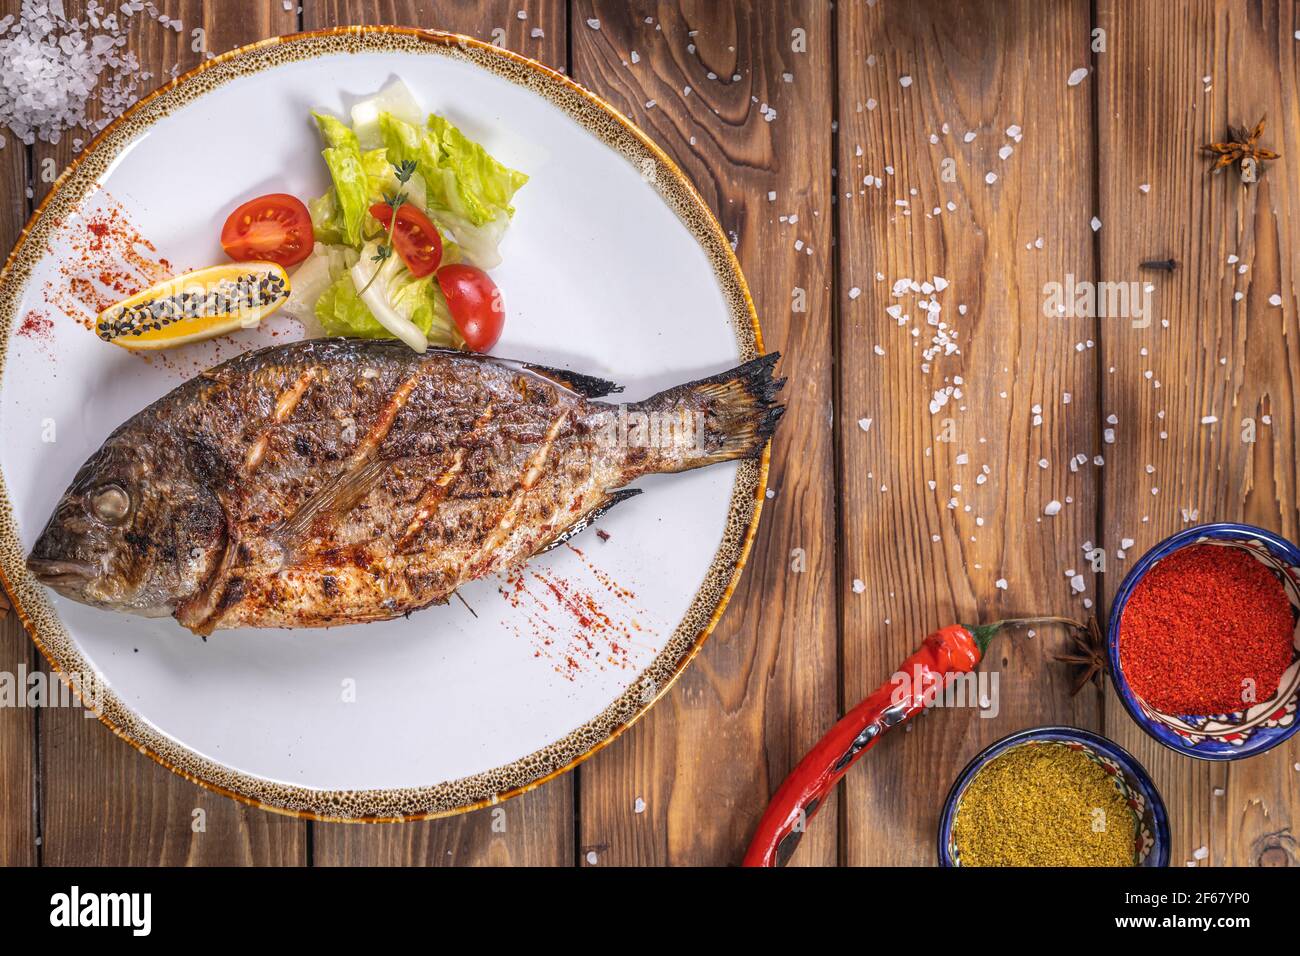 Pesce alla griglia su un piatto con verdure, peperone, sale grosso su fondo di legno marrone. Servizio ristorante. Foto Stock